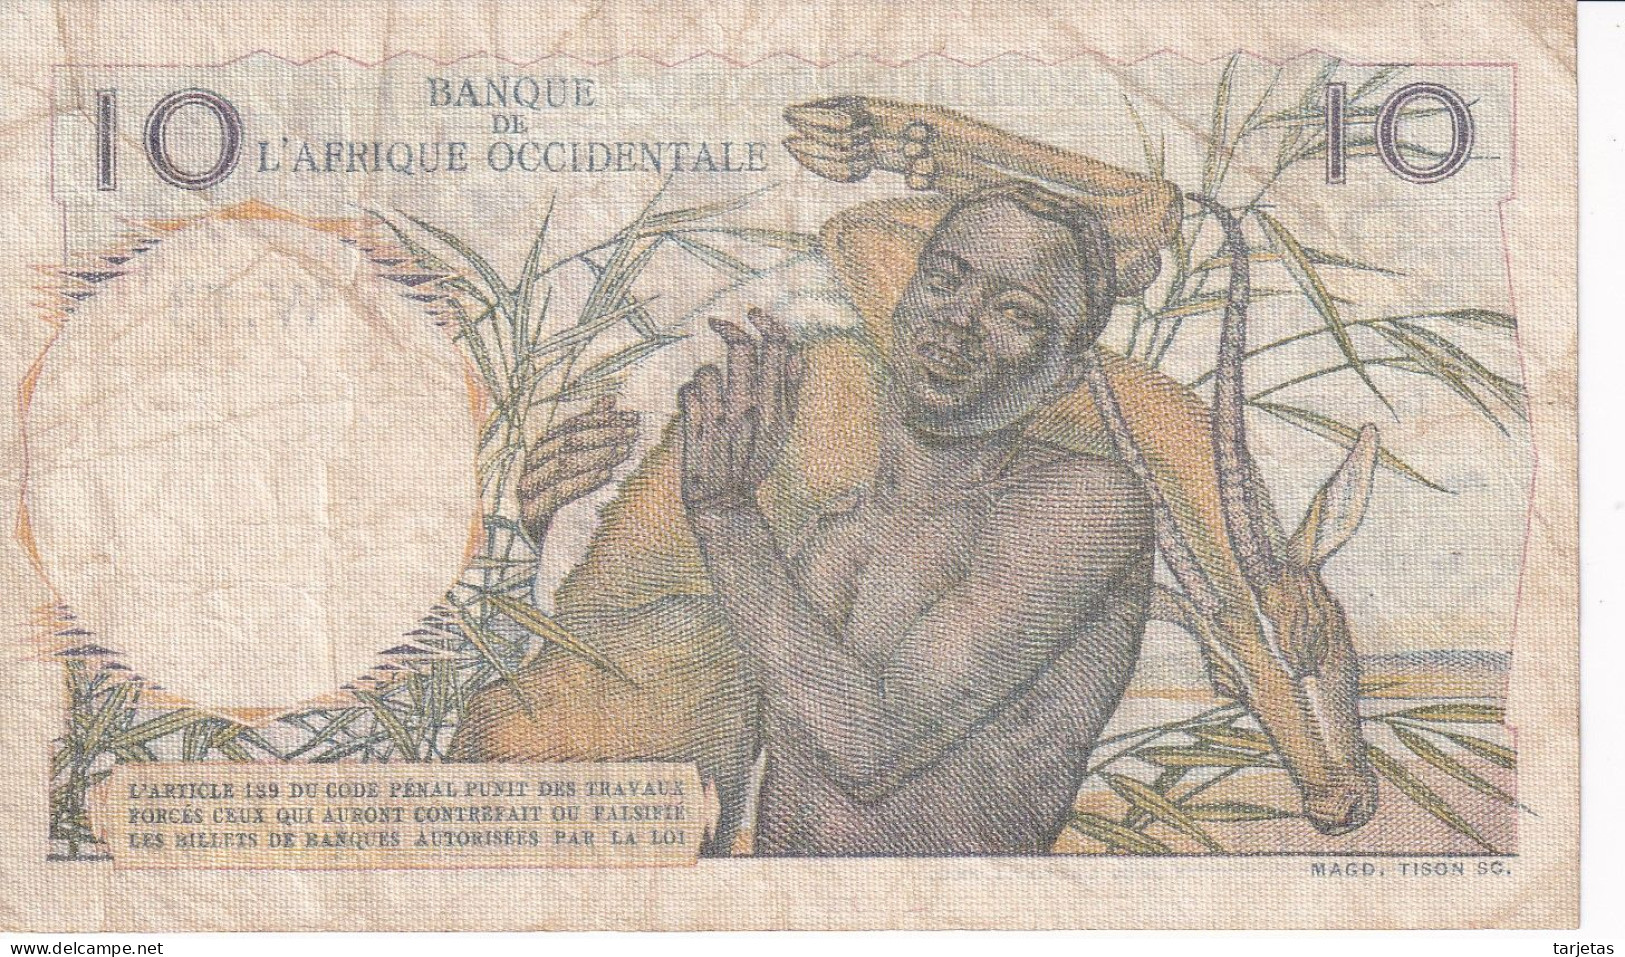 BILLETE DE AFRIQUE OCCIDENTALE DE 10 FRANCS DEL AÑO 1949 (BANKNOTE) - Westafrikanischer Staaten